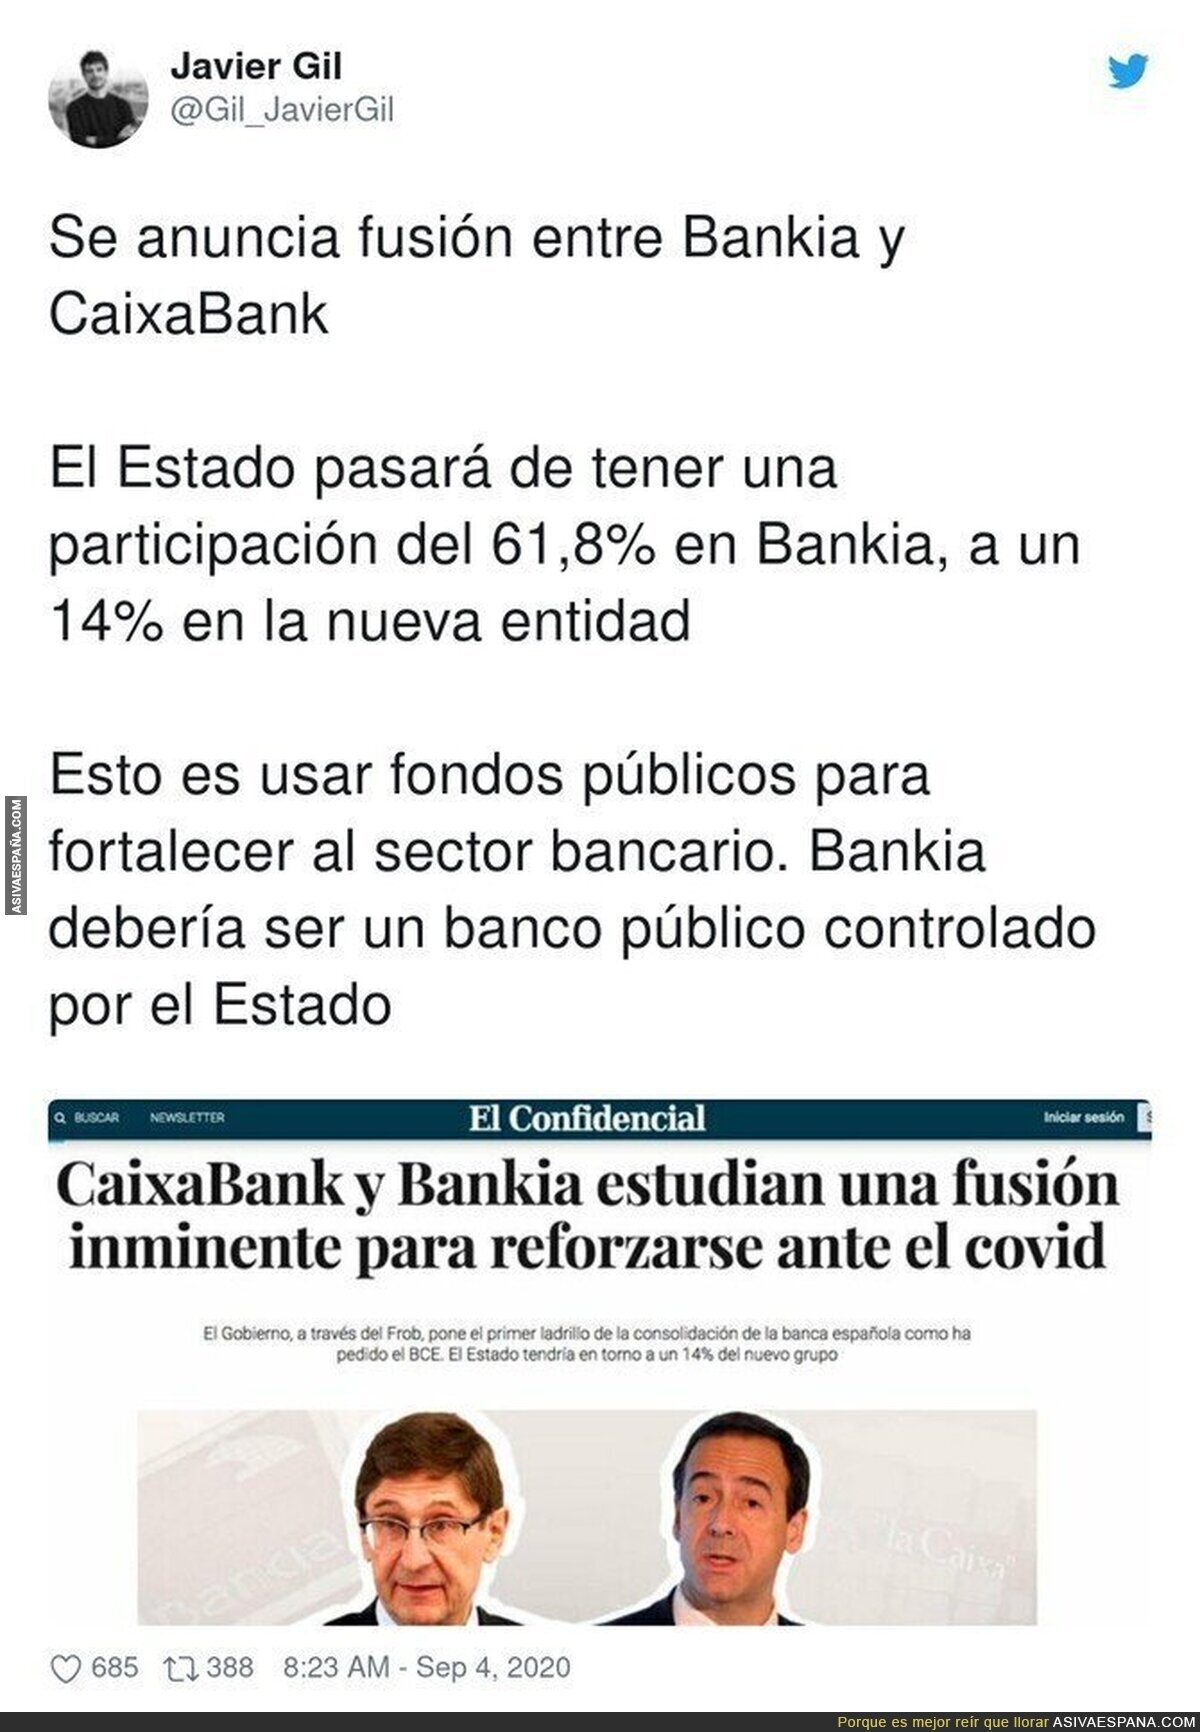 La situación que se nos viene con la fusión de CaixaBank y Bankia